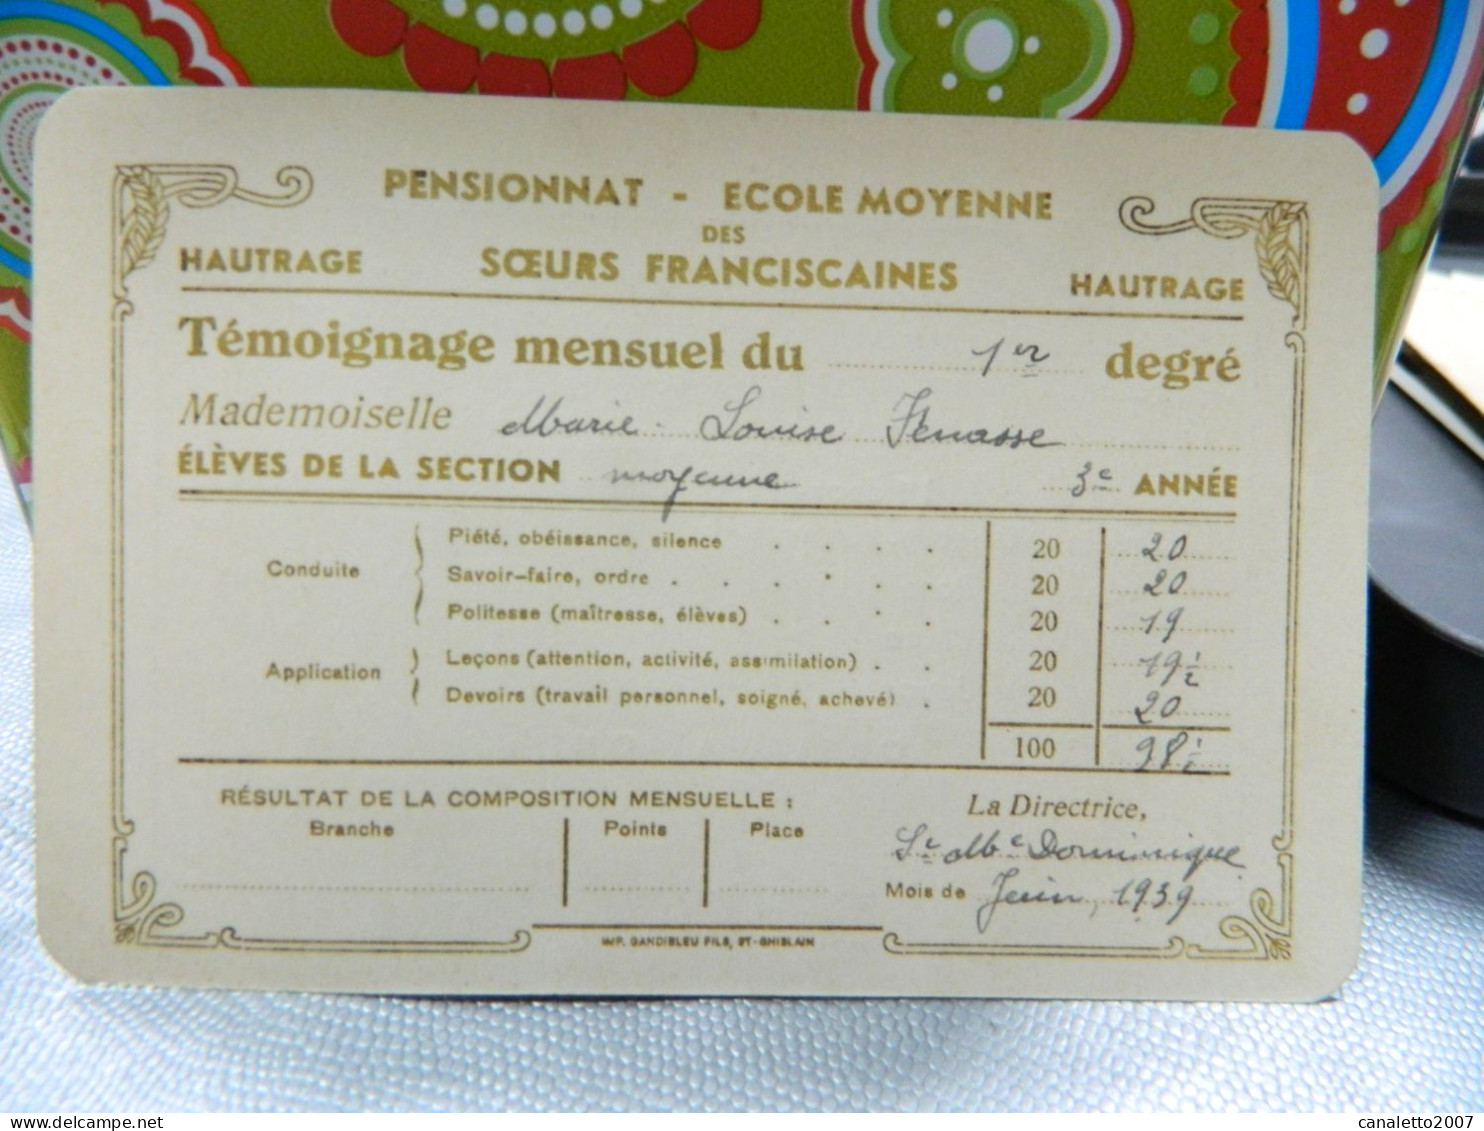 HAUTRAGE: TEMOIGNAGE MENSUEL DU PENSIONNAT ECOLE MOYENNE DES SOEURS FRANCISCAINES  DE MARIE LOUISE FENASSE EN 1959 - Diplômes & Bulletins Scolaires